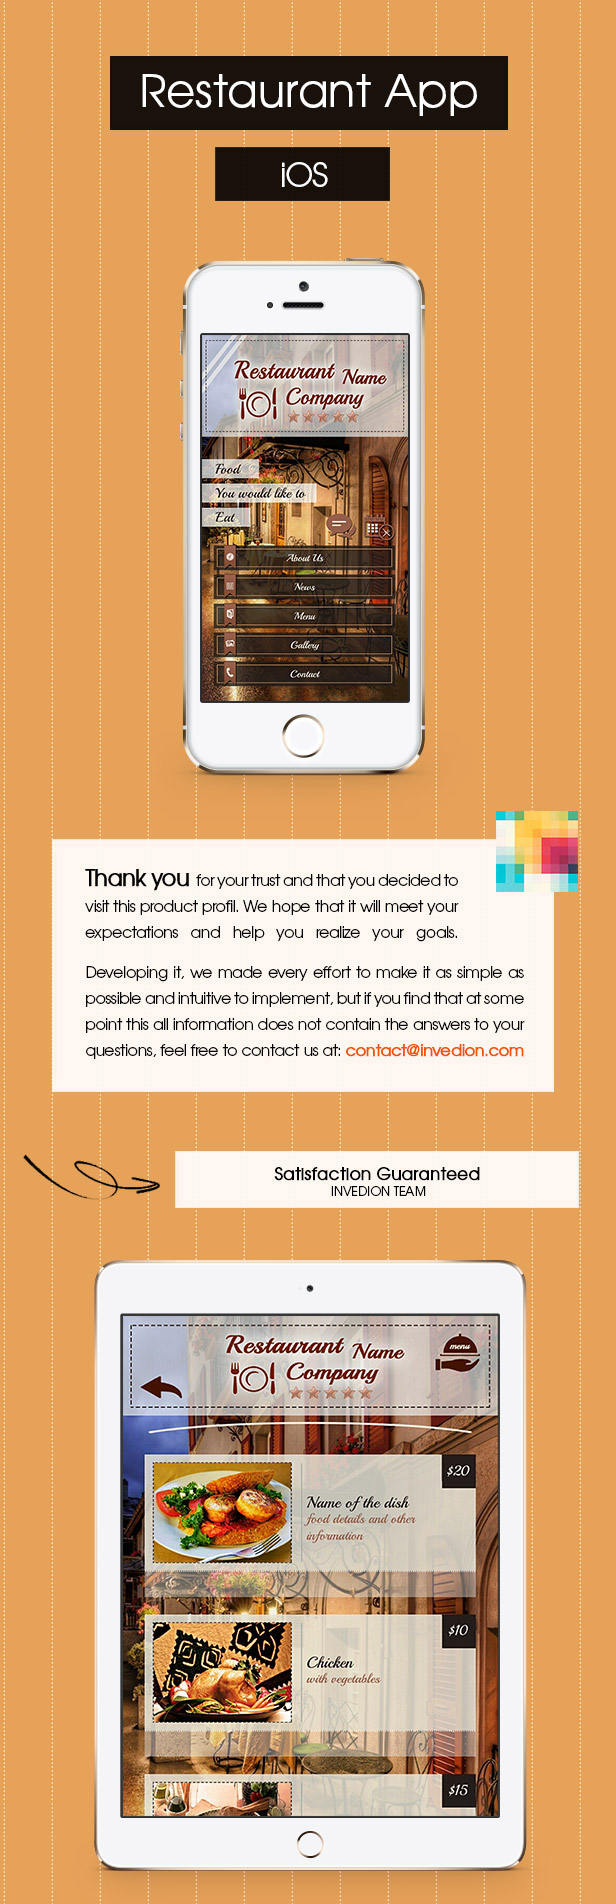 Restaurant App With CMS - iOS - 2